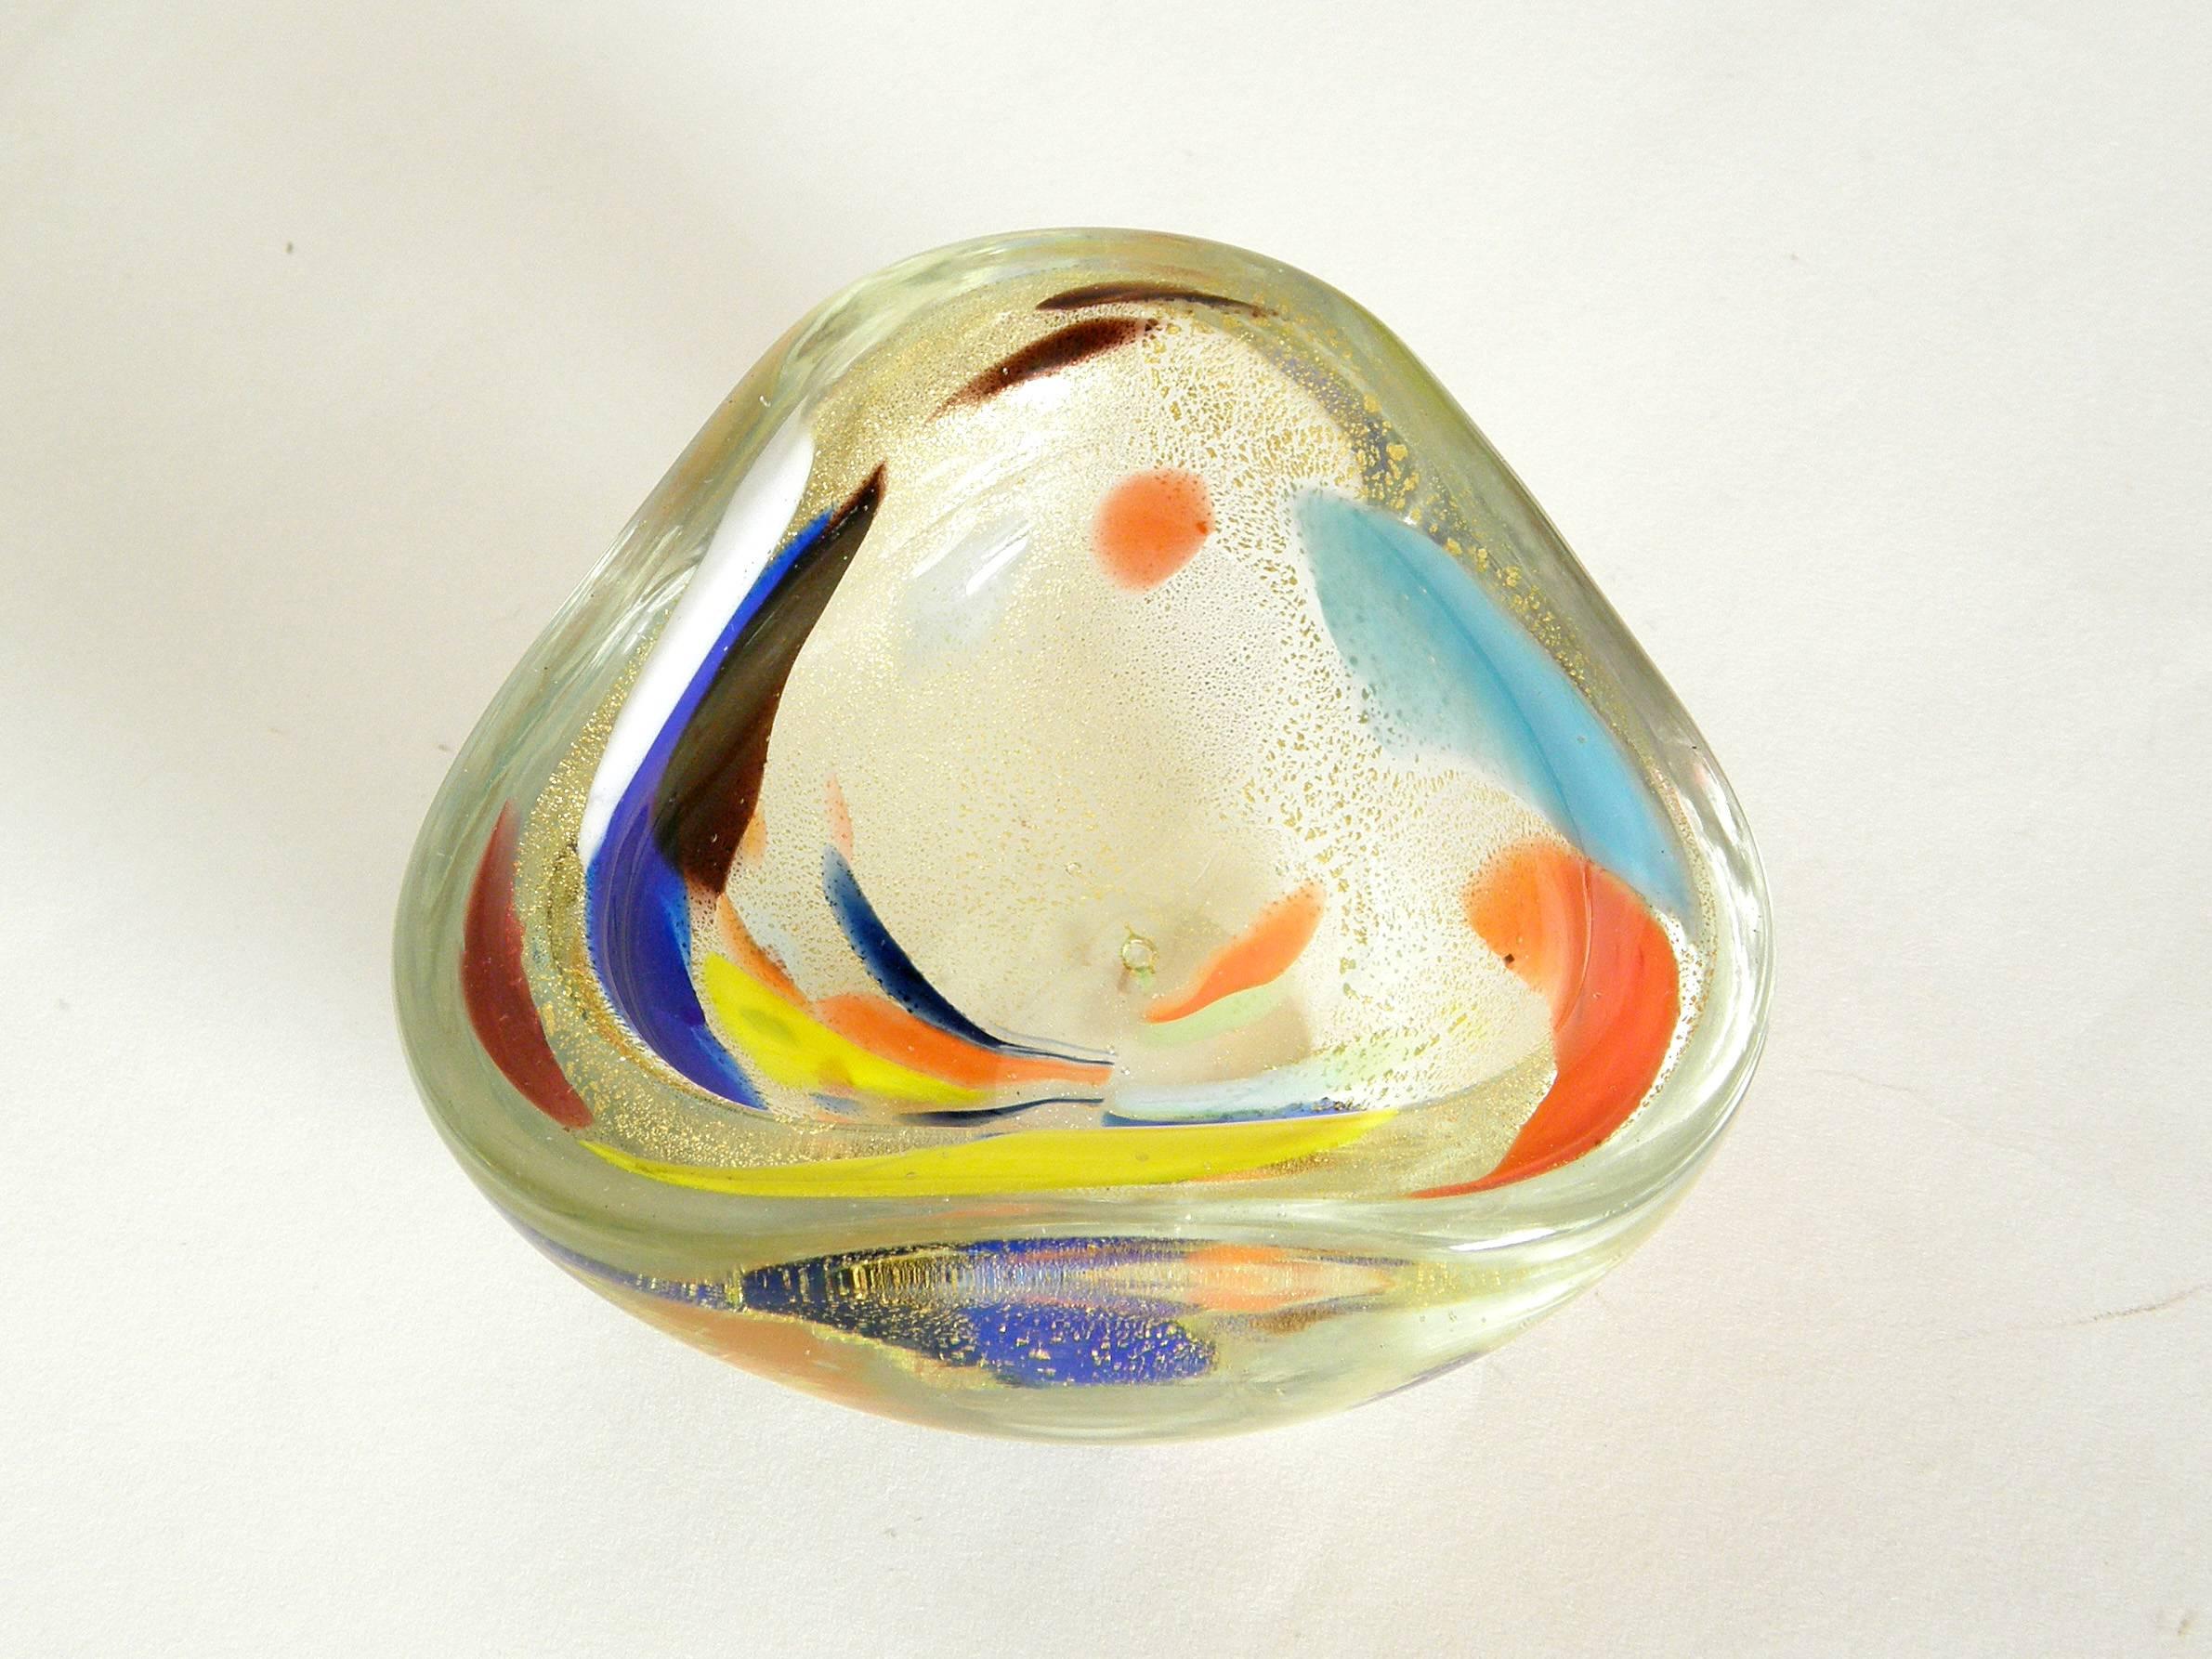 Diese zierliche Dreispitzschale aus Muranoglas mit fleckigen, mehrfarbigen Mustern wurde nach dem Stil des italienischen Glaskünstlers Dino Martens gefertigt.

Bitte kontaktieren Sie uns, wenn Sie irgendwelche Fragen haben.